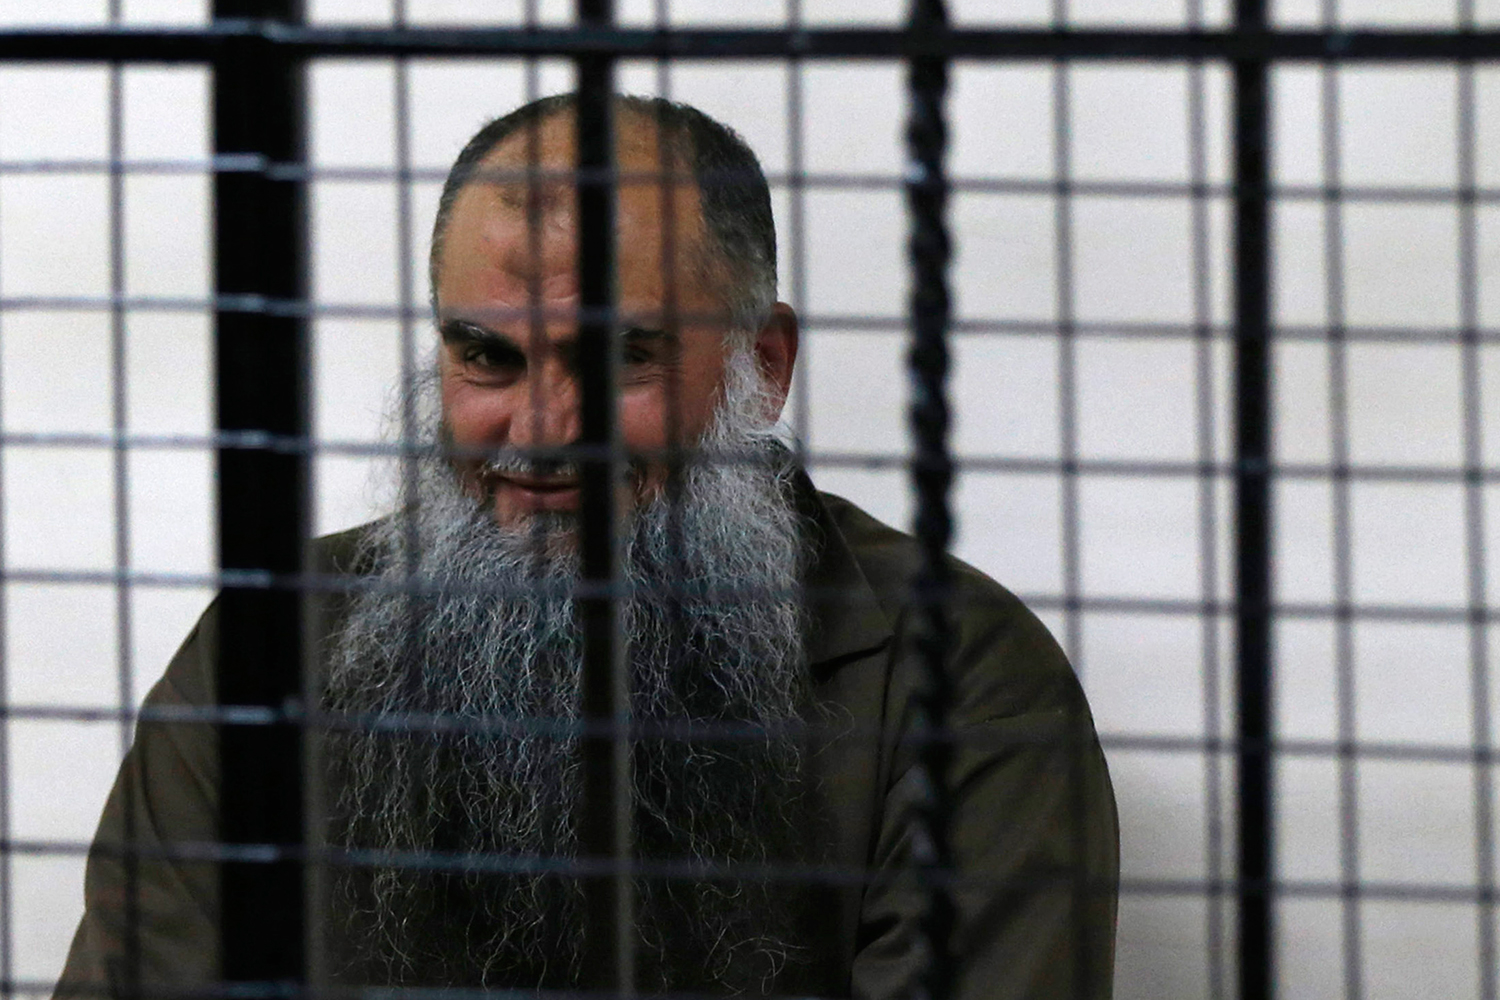 Presos extremistas islámicos obligan a pagar «impuestos de protección» a prisioneros no musulmanes